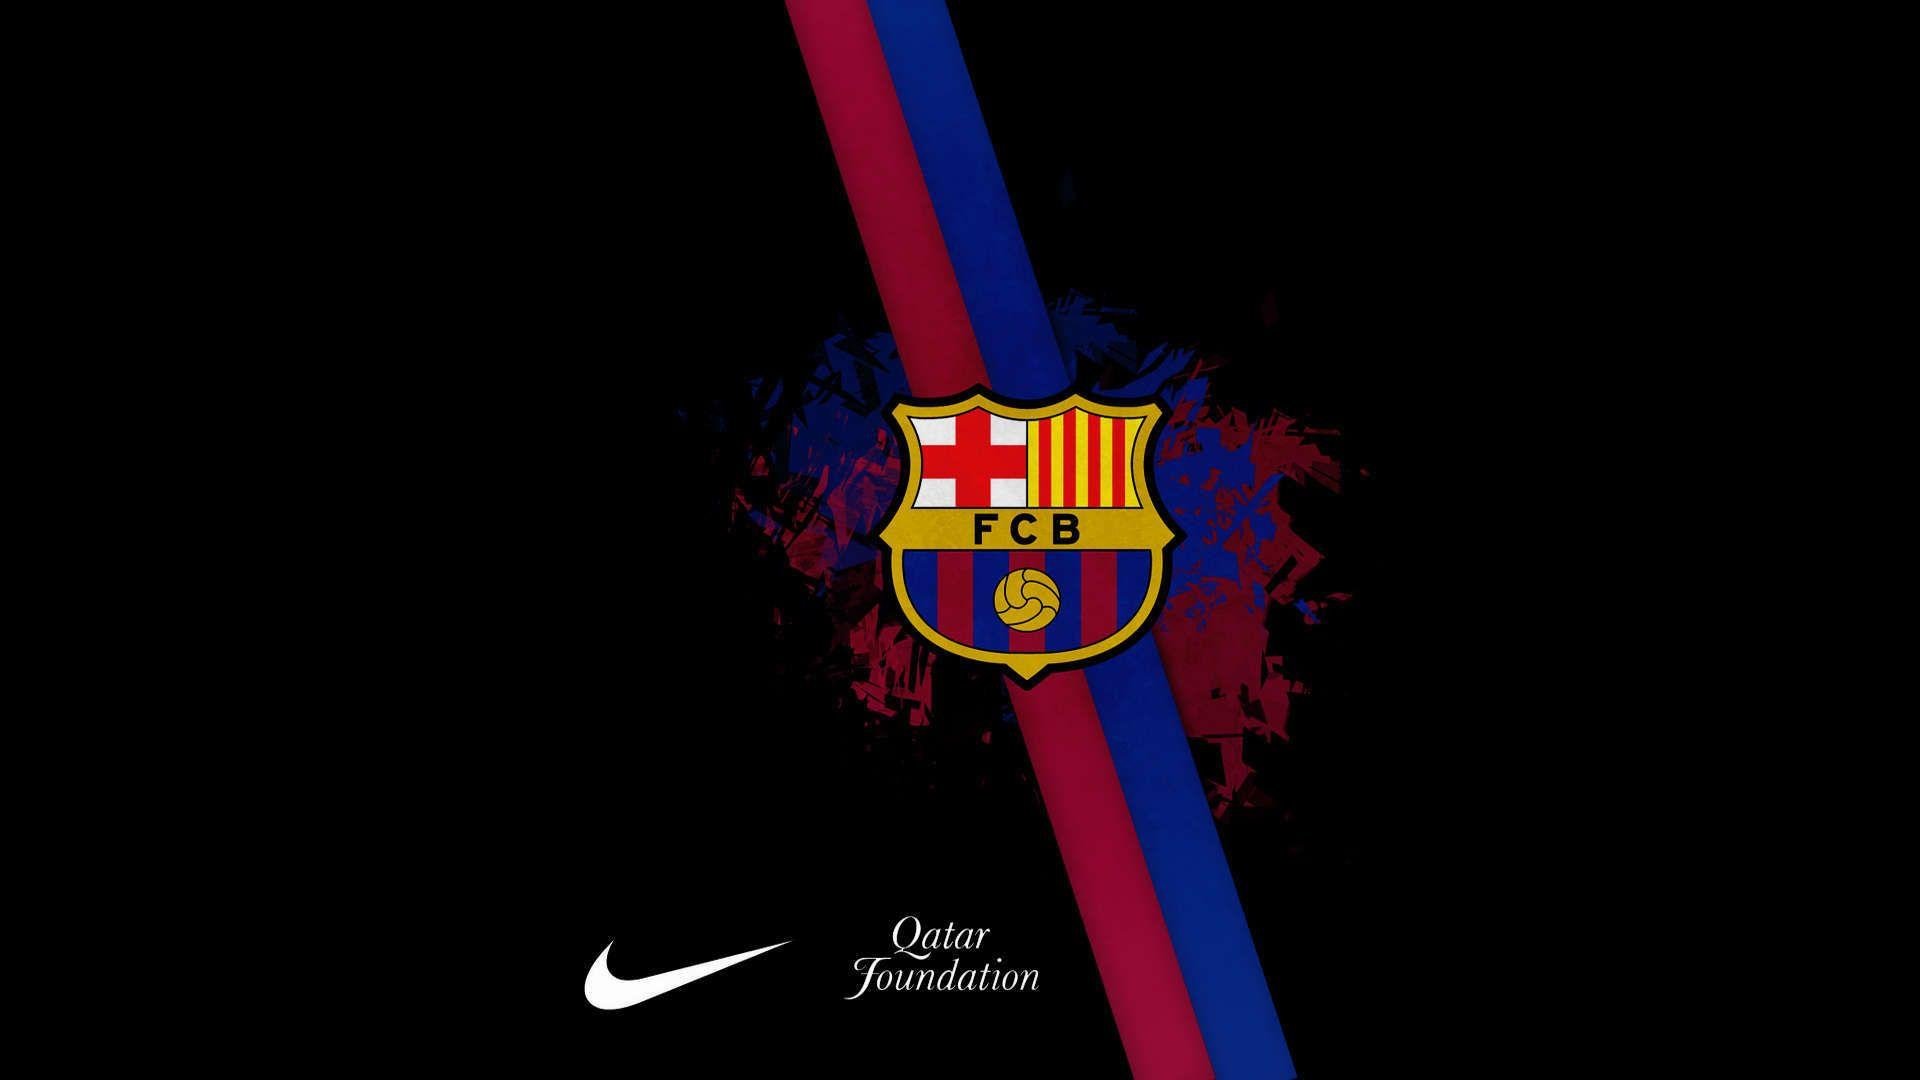 Барселона футбольный клуб чёрный фон